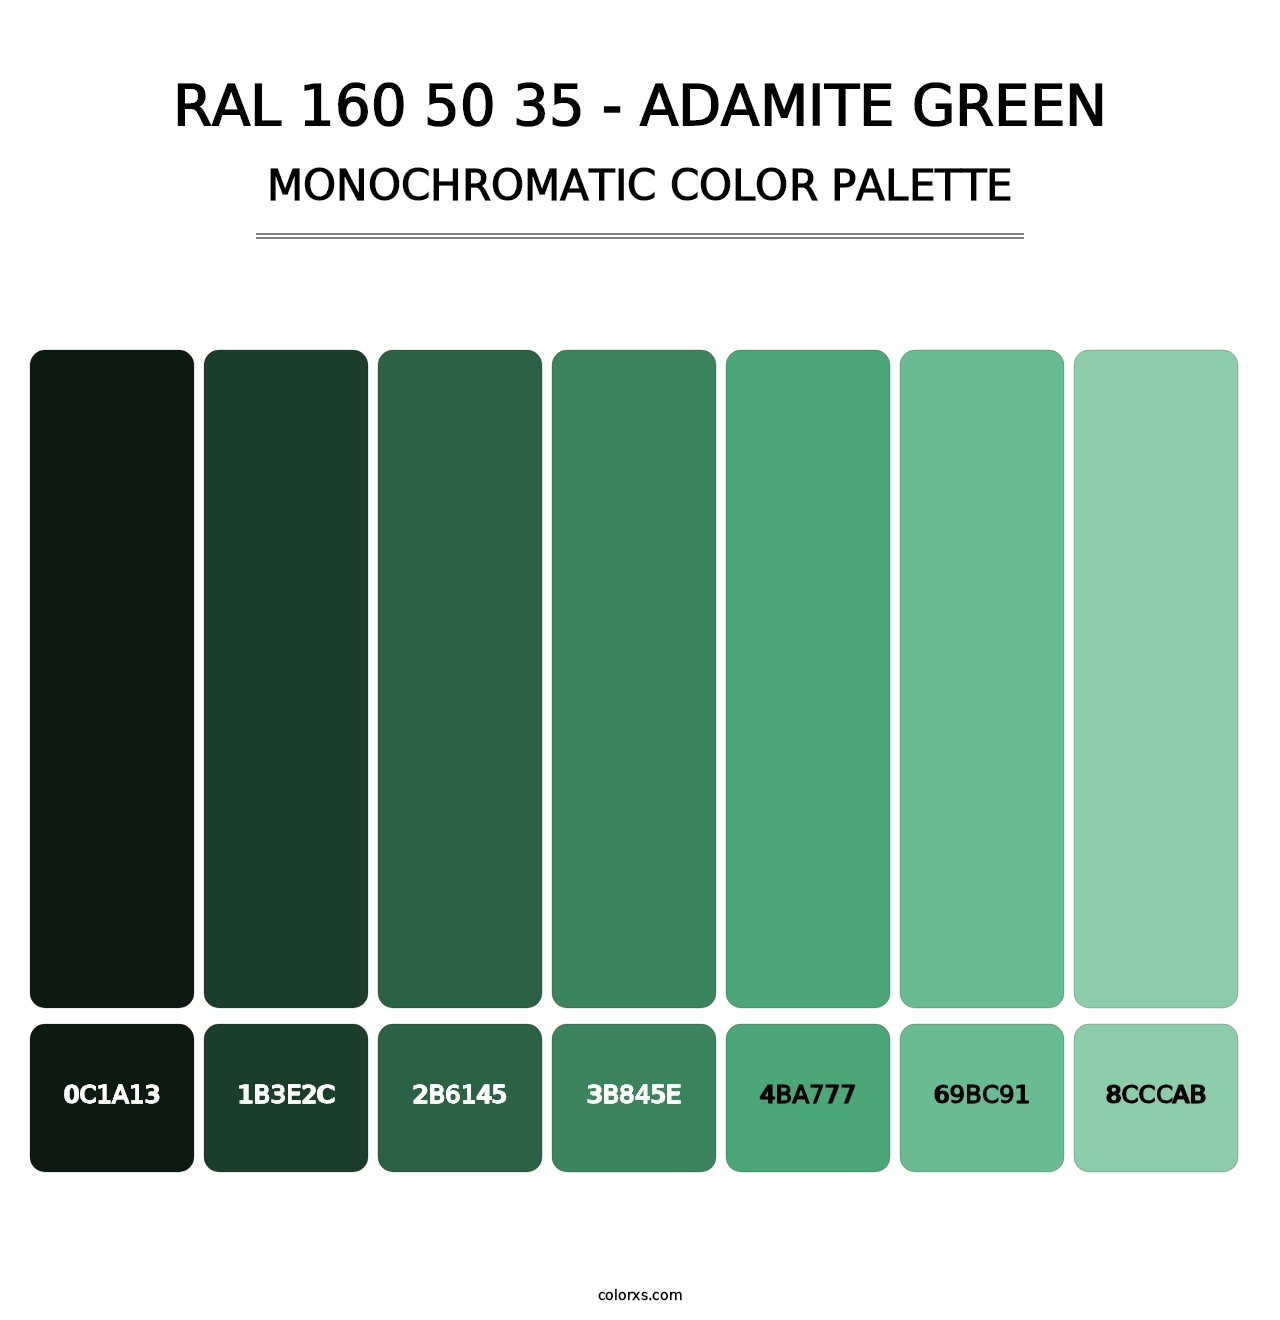 RAL 160 50 35 - Adamite Green - Monochromatic Color Palette